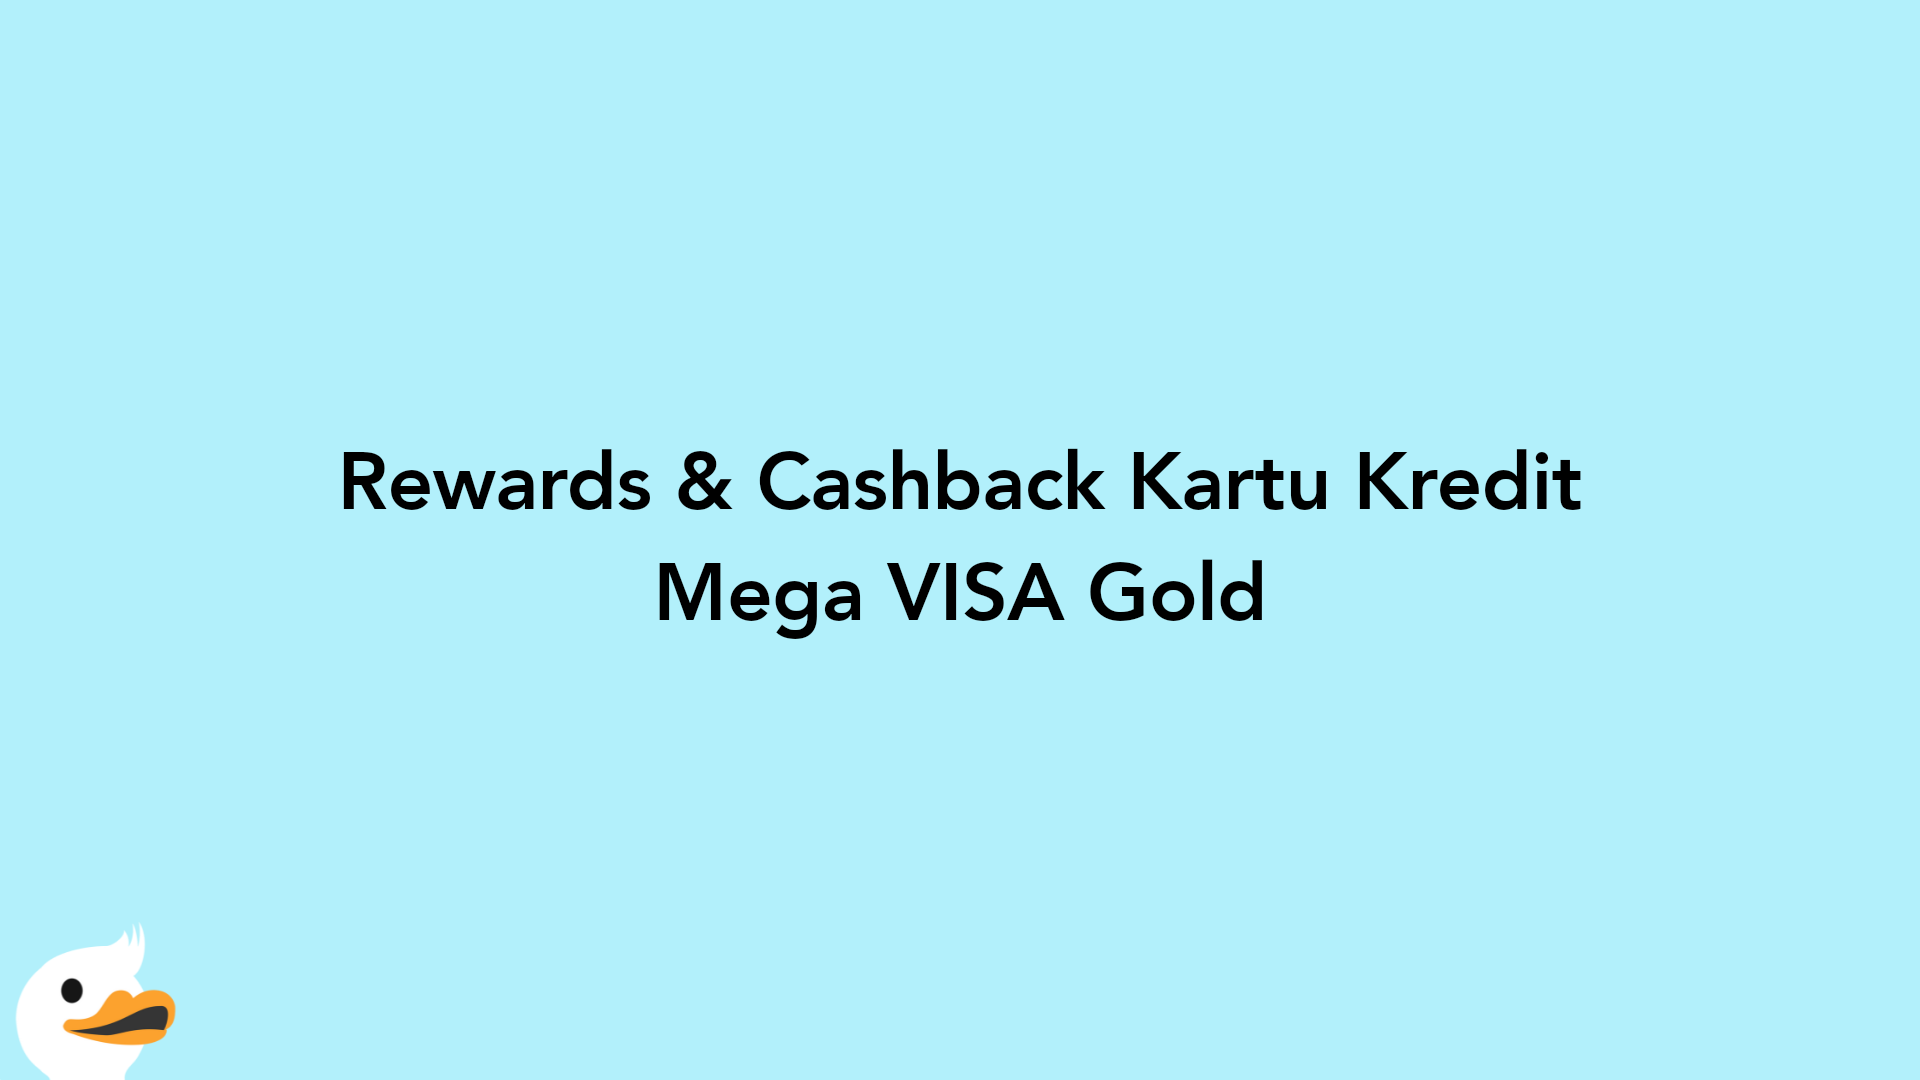 Rewards & Cashback Kartu Kredit Mega VISA Gold